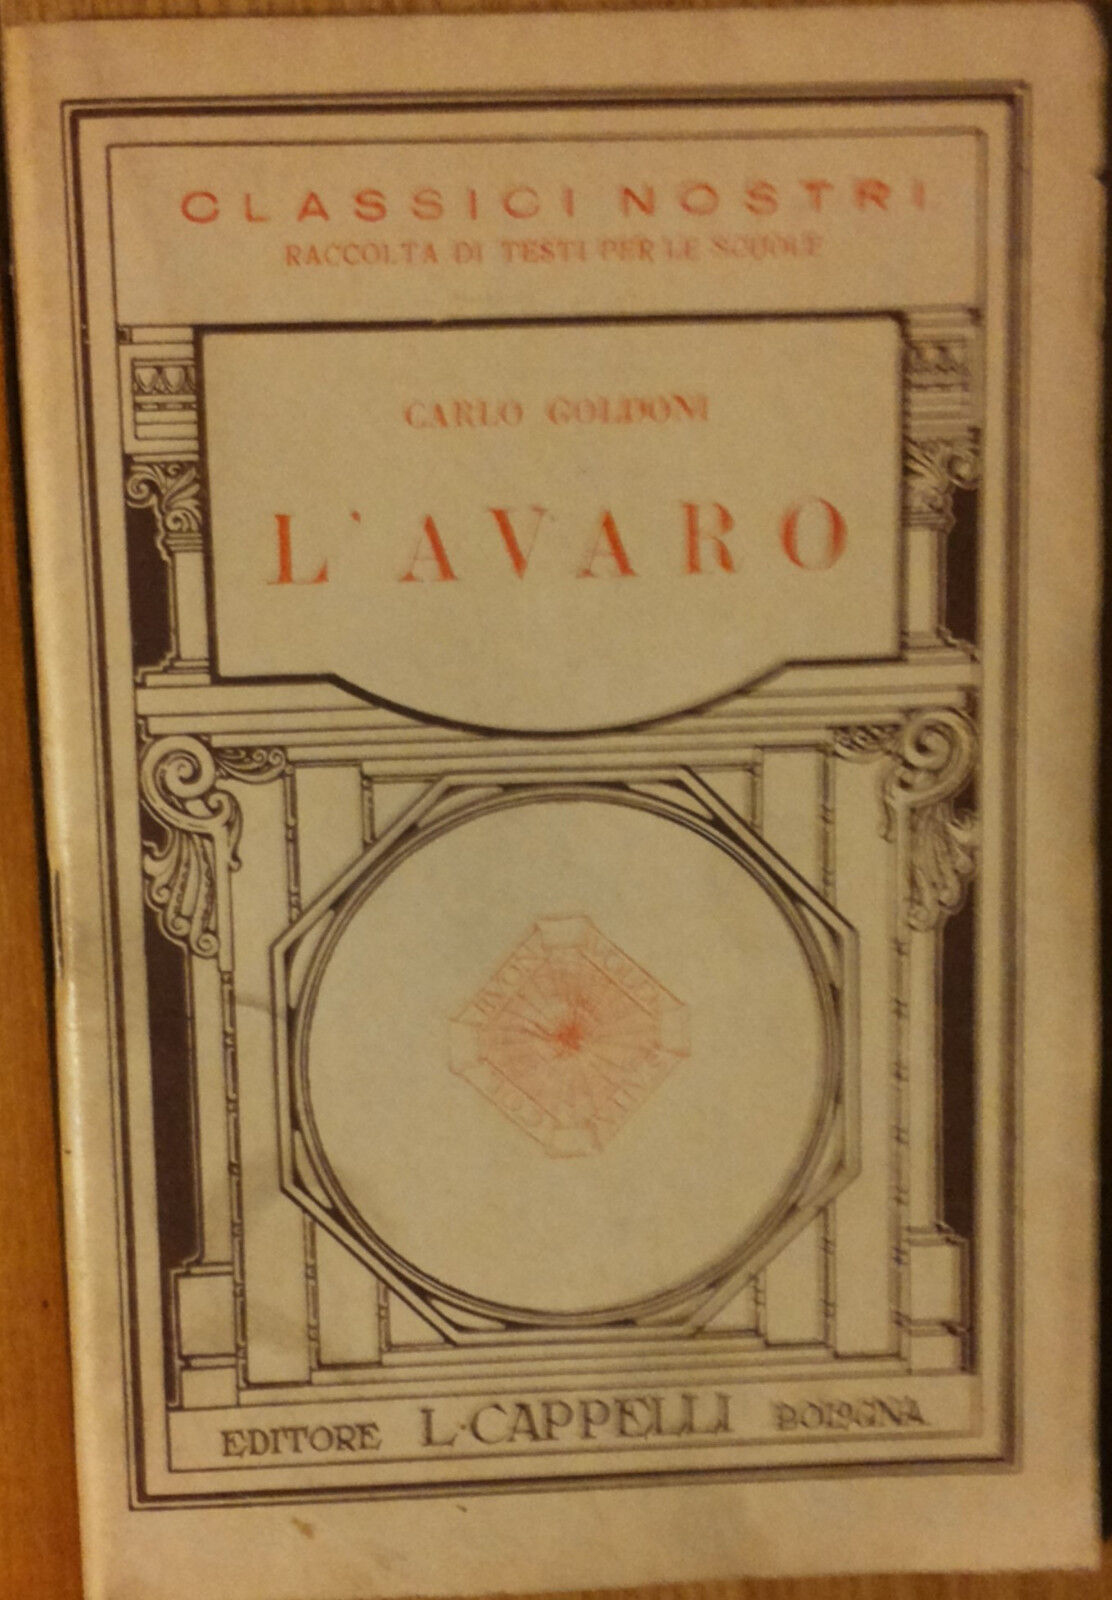 L'avaro - Goldoni - Licino Cappelli Editore,1934 - R